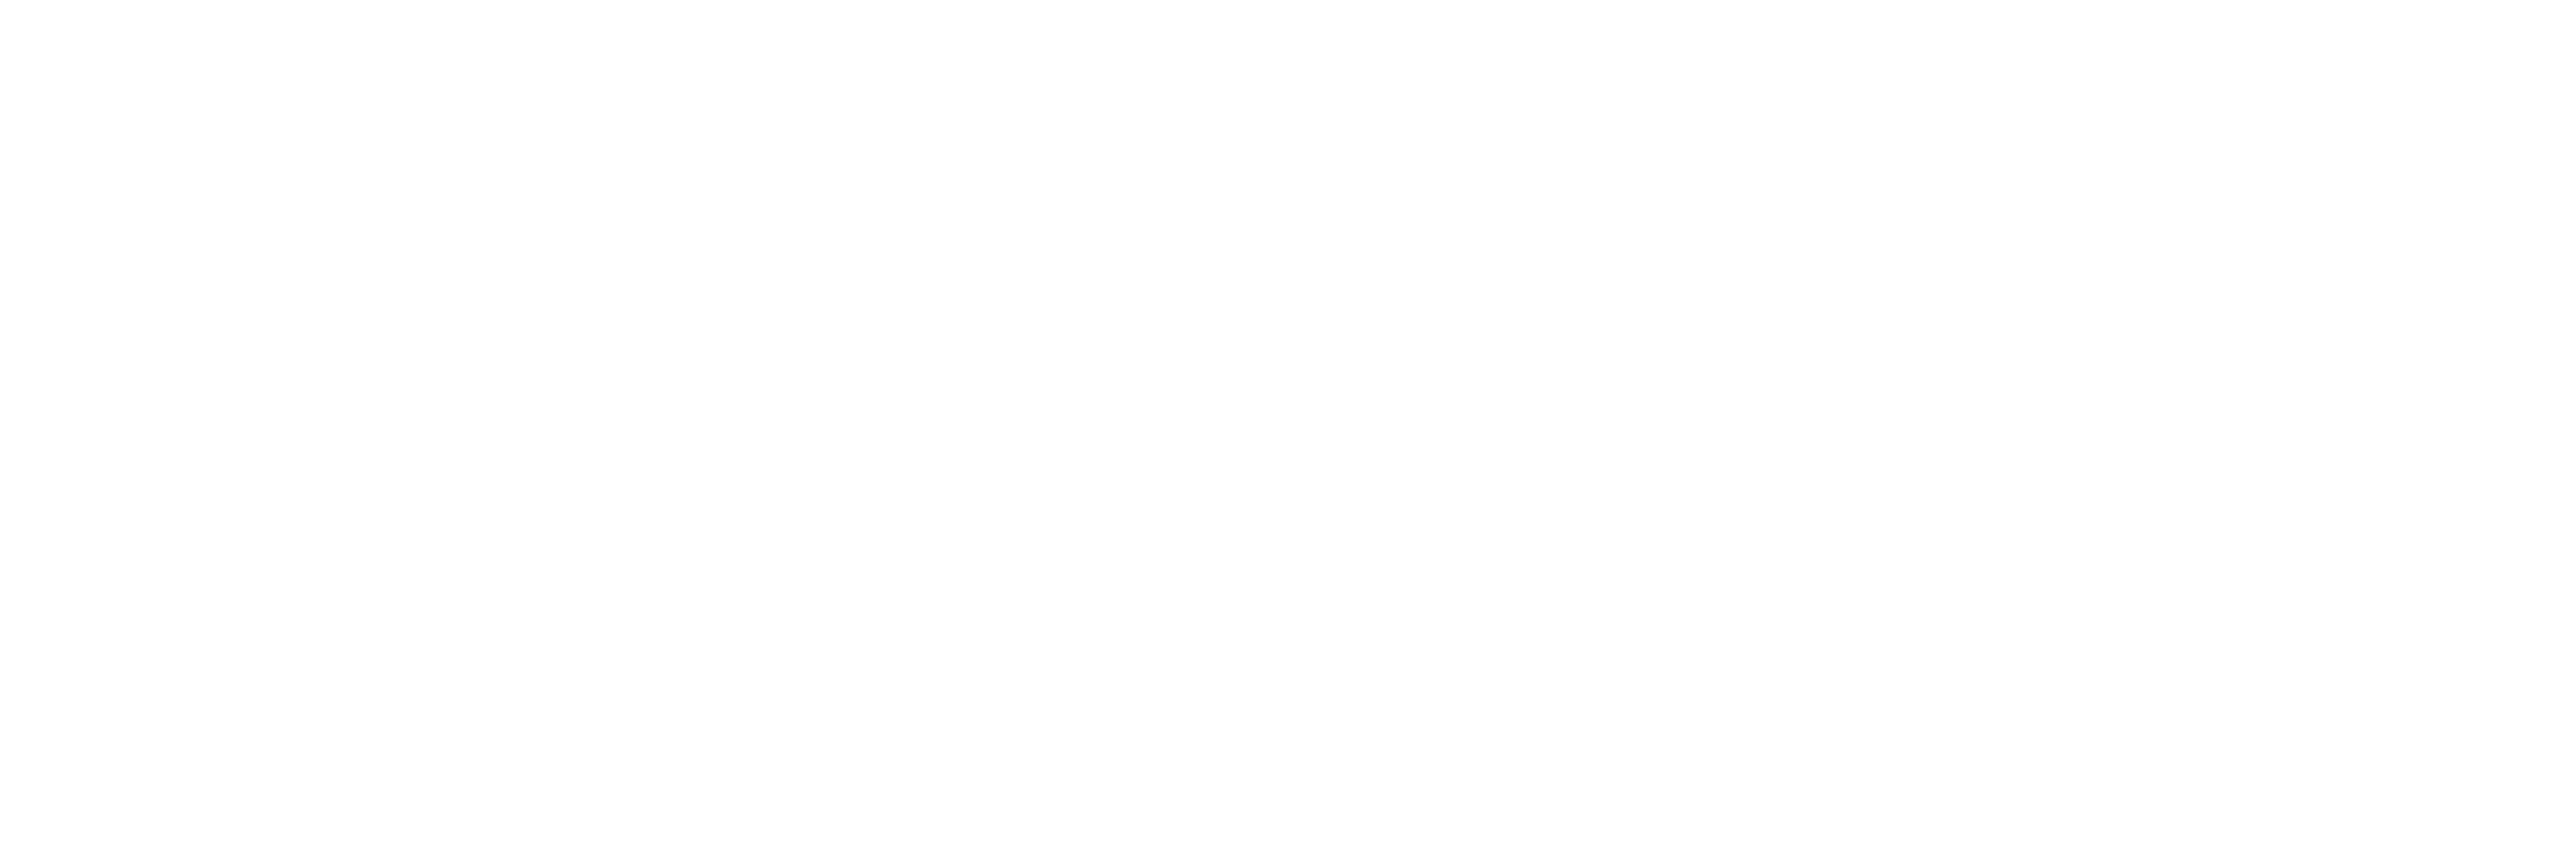 Africa Golf Safari